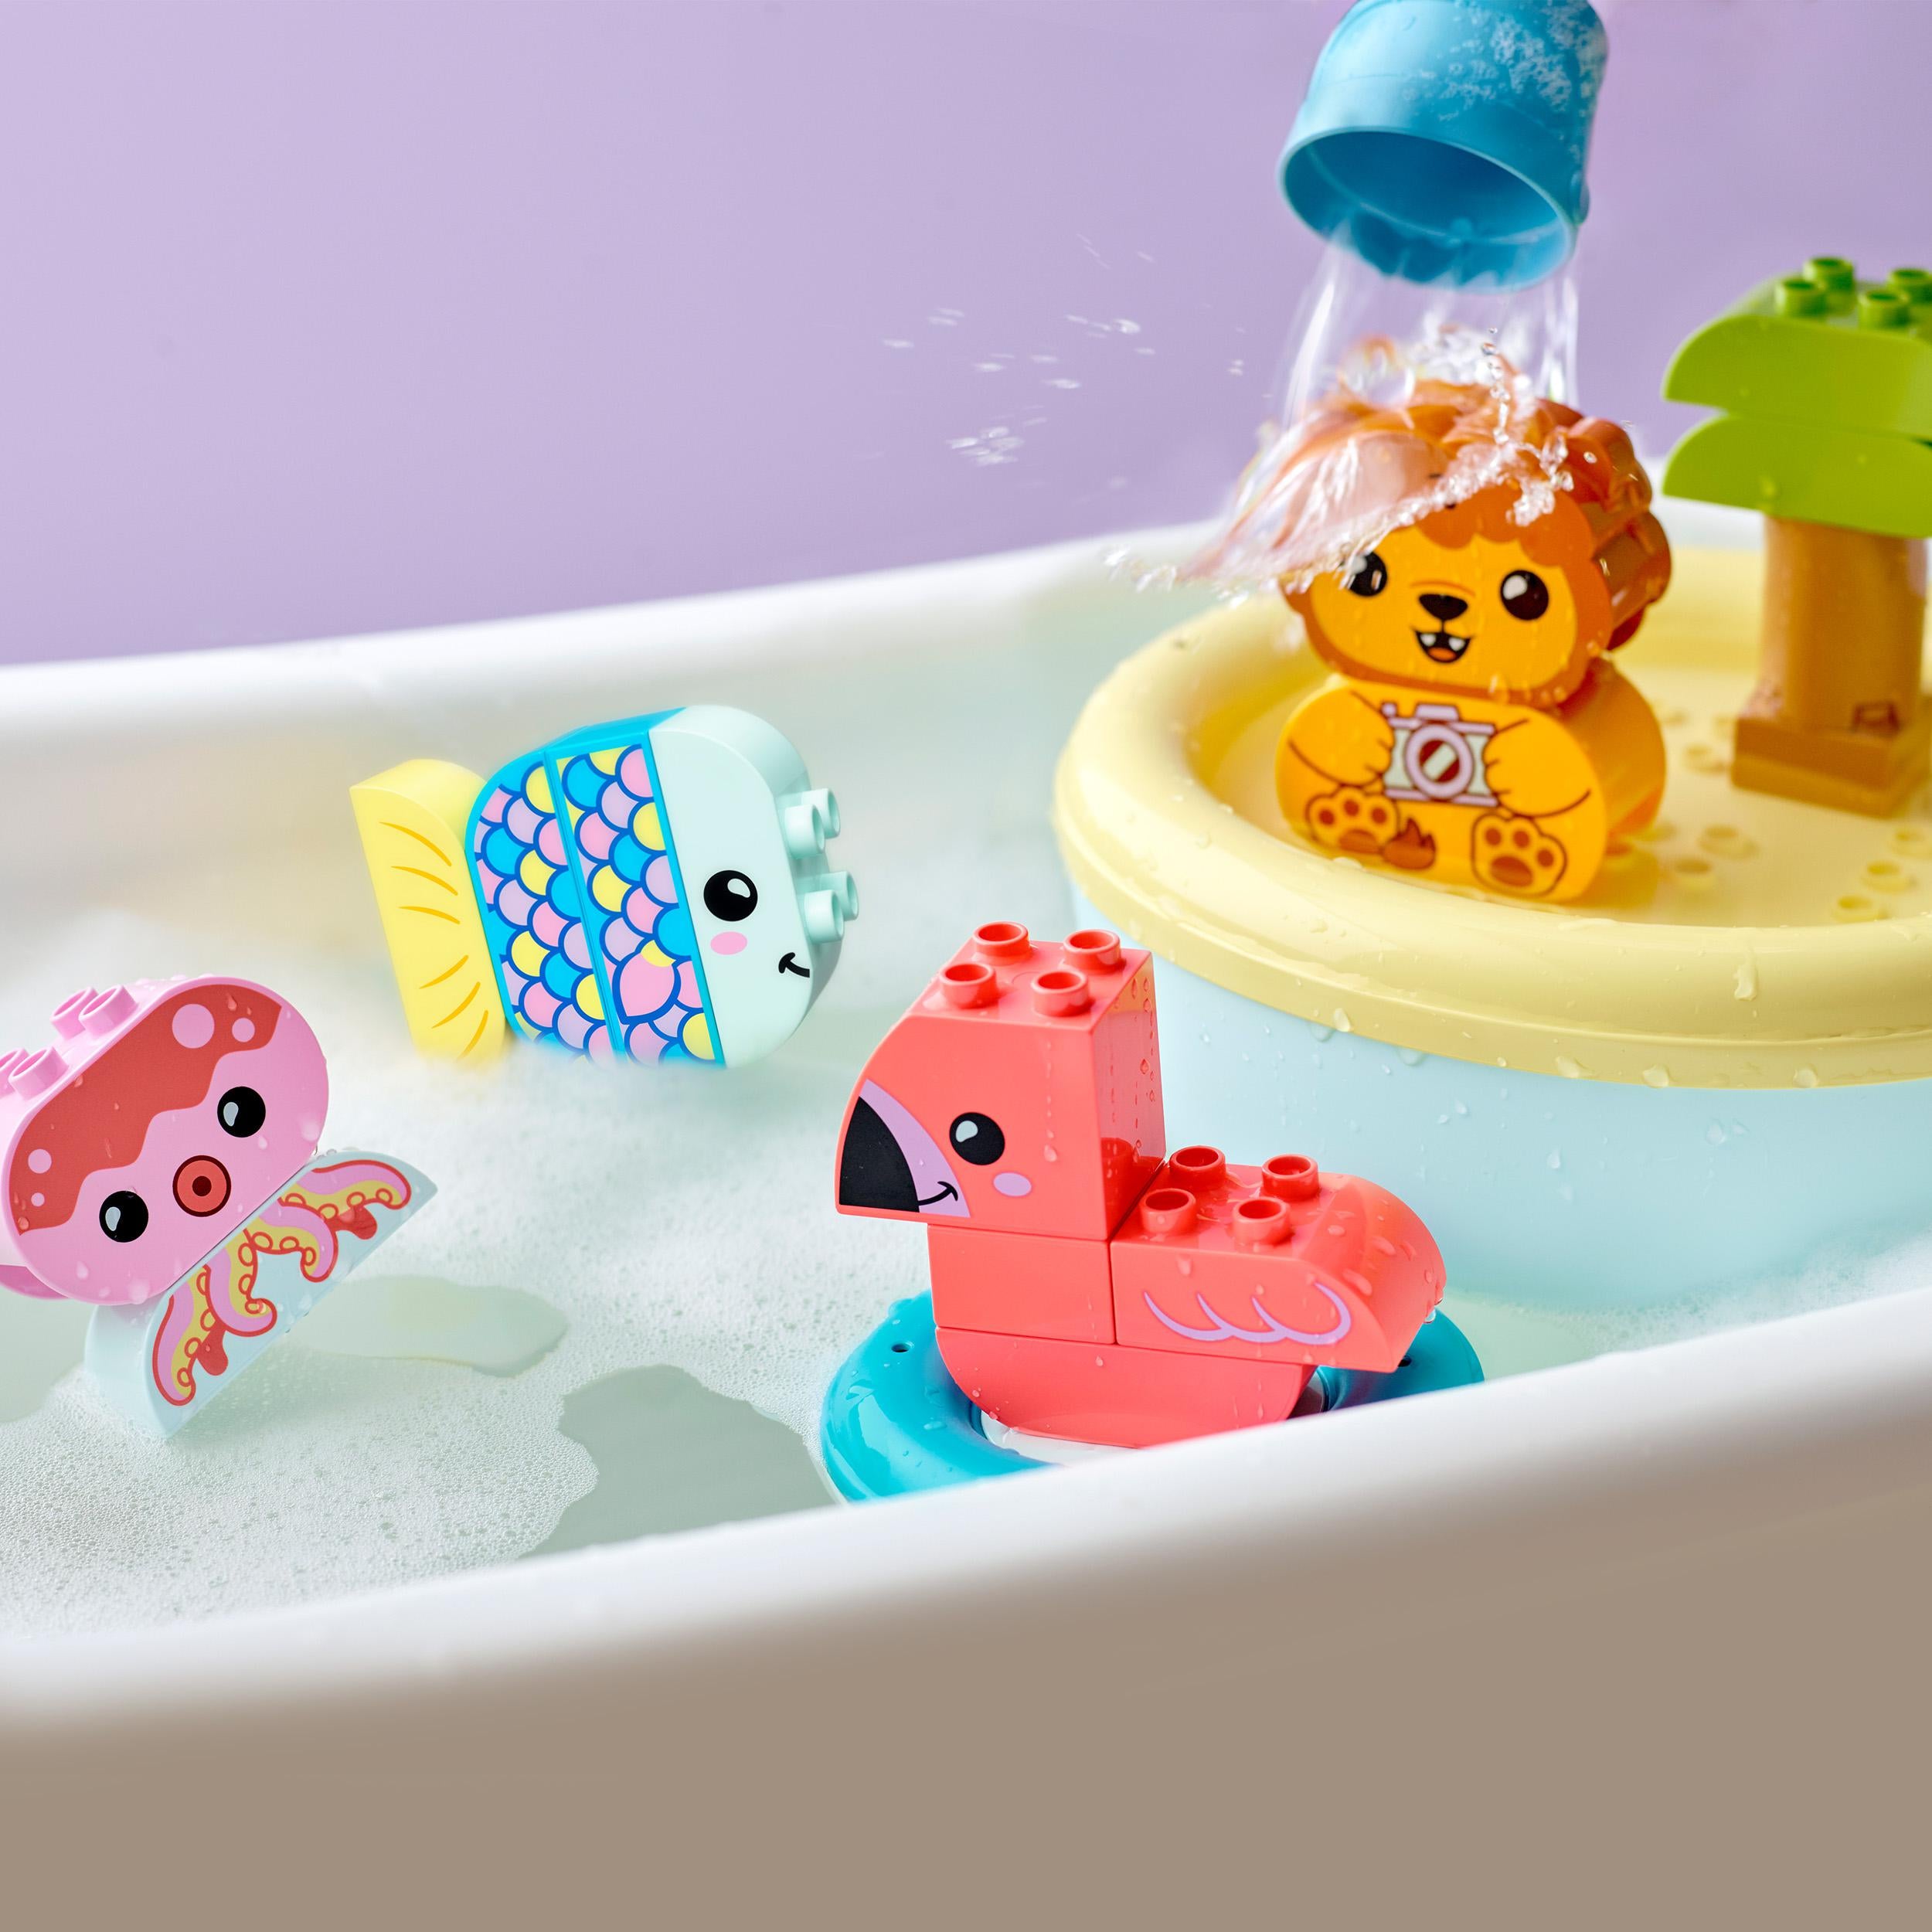 LEGO Duplo Bath Time Fun Floating Animal Isl 10966